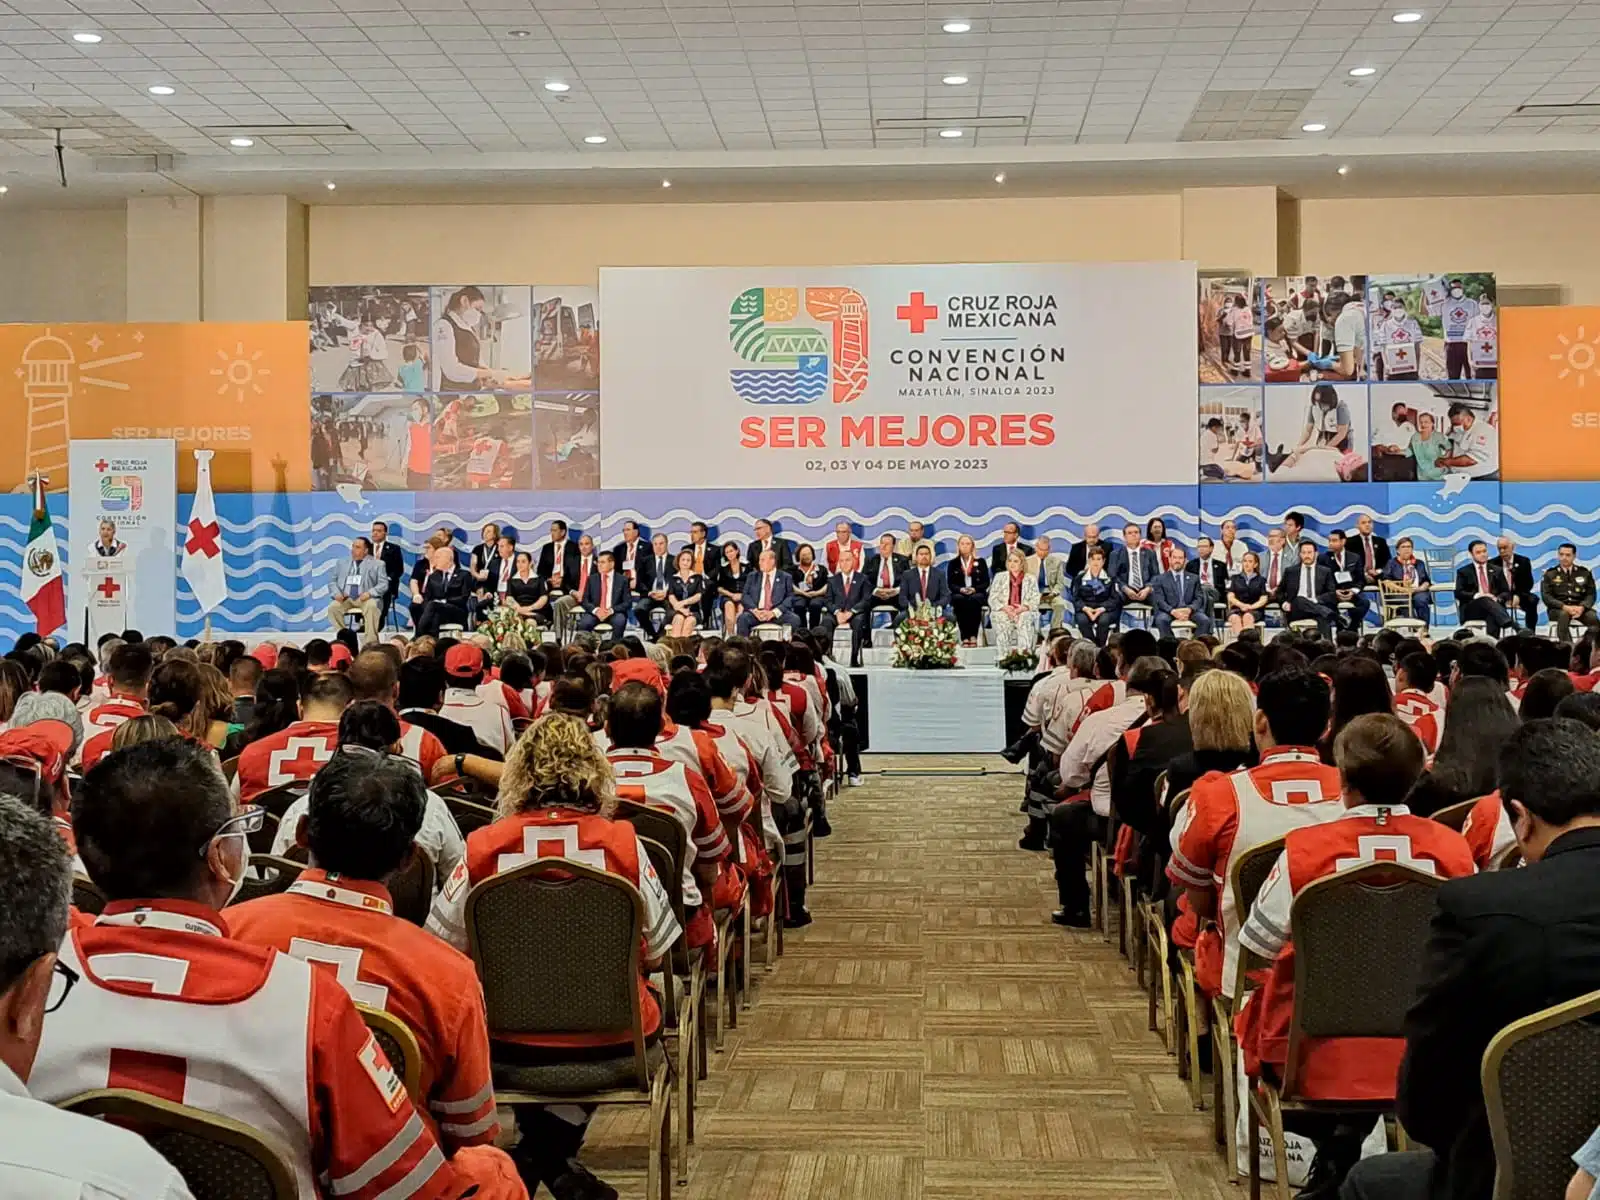 51 Convención Nacional de Cruz Roja Mexicana